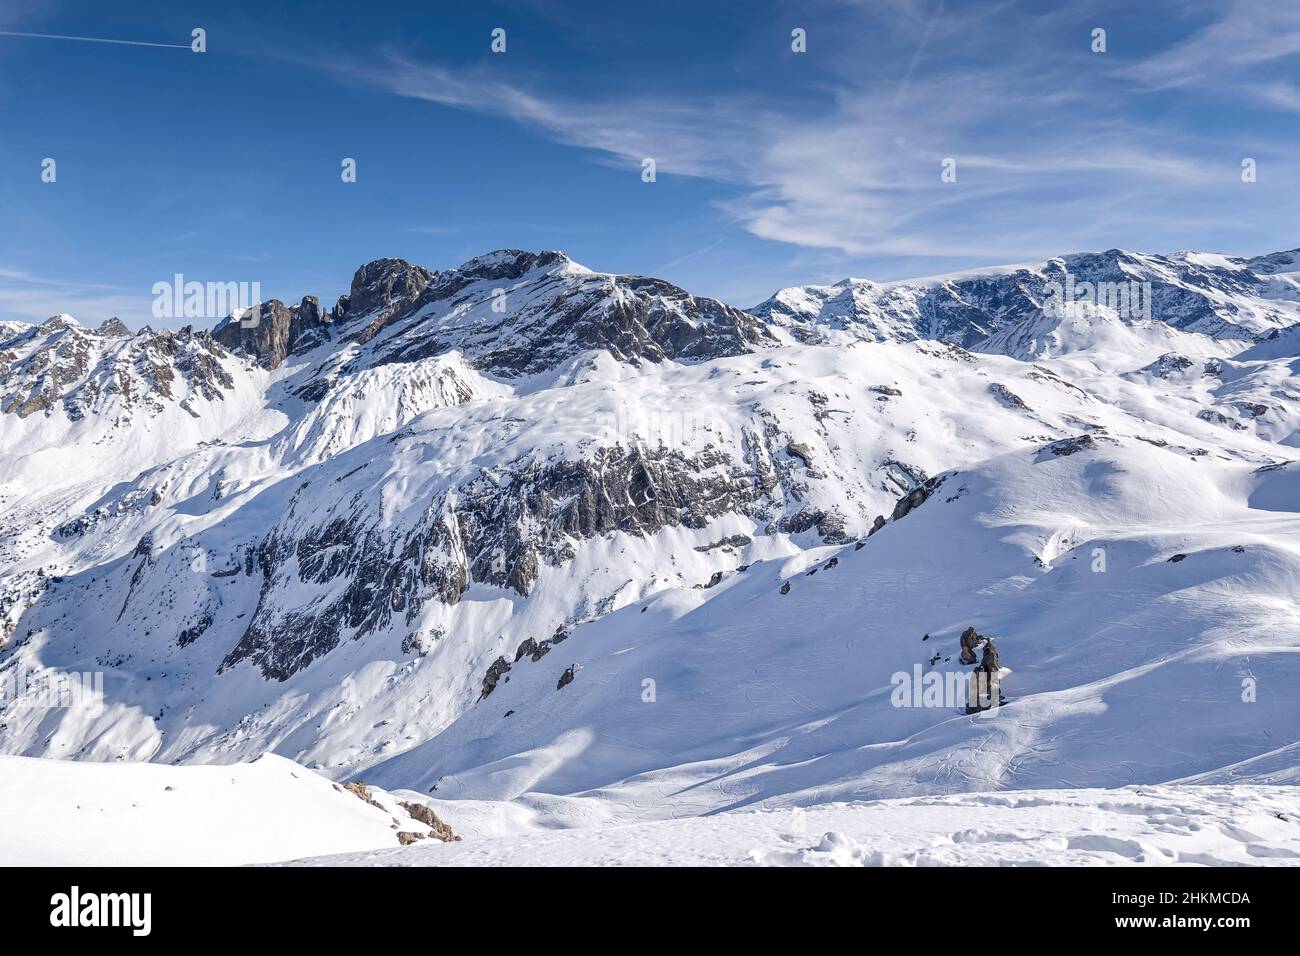 Bergwelt bei Couchevel Moriond, Vallee de Courchevel, Departement Savoie, Frankreich Stock Photo